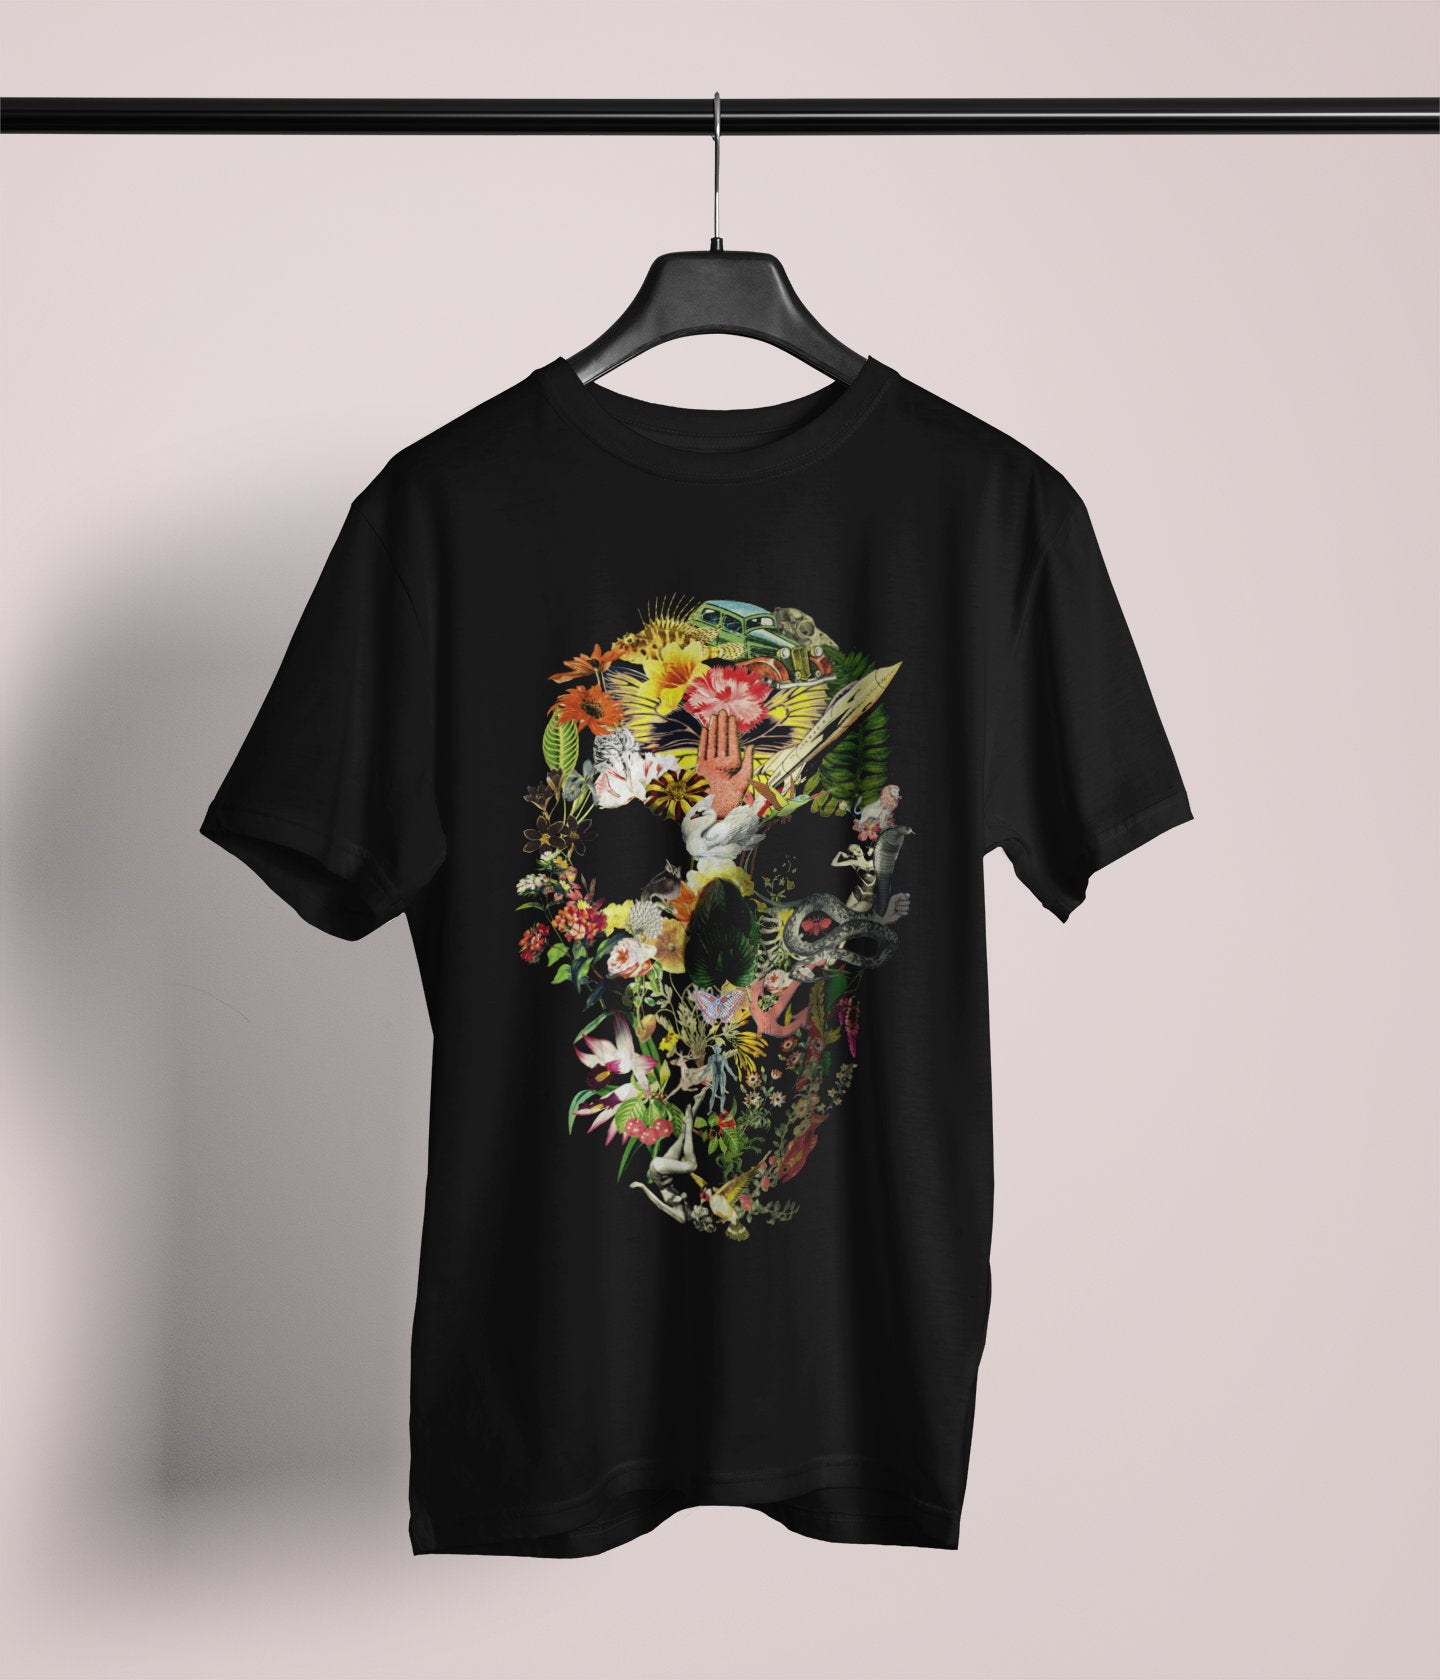 Skull Art Men's T shirt, Sugar Skull Print Shirt Gift For Him, Bella Canvas Gothic Skull T Shirt Gift, Floral Skull Art Unisex Tee Gift